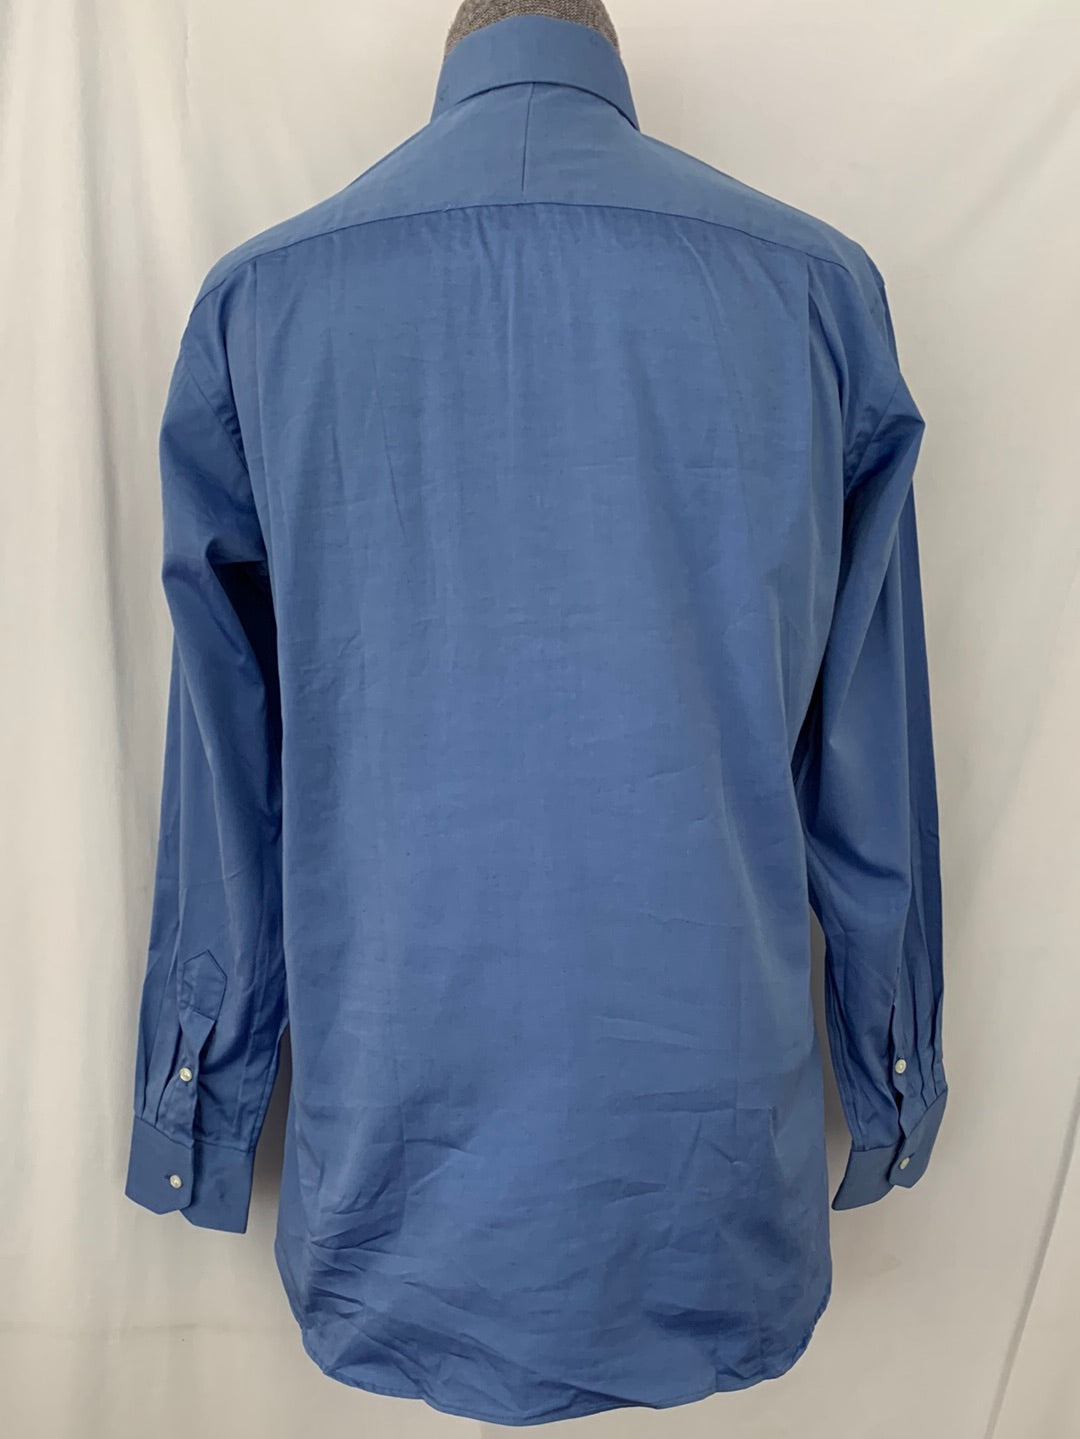 NWOT VTG - MAURICE JULIAN blue "Oxford" Button Up Long Sleeve Shirt - 15 34